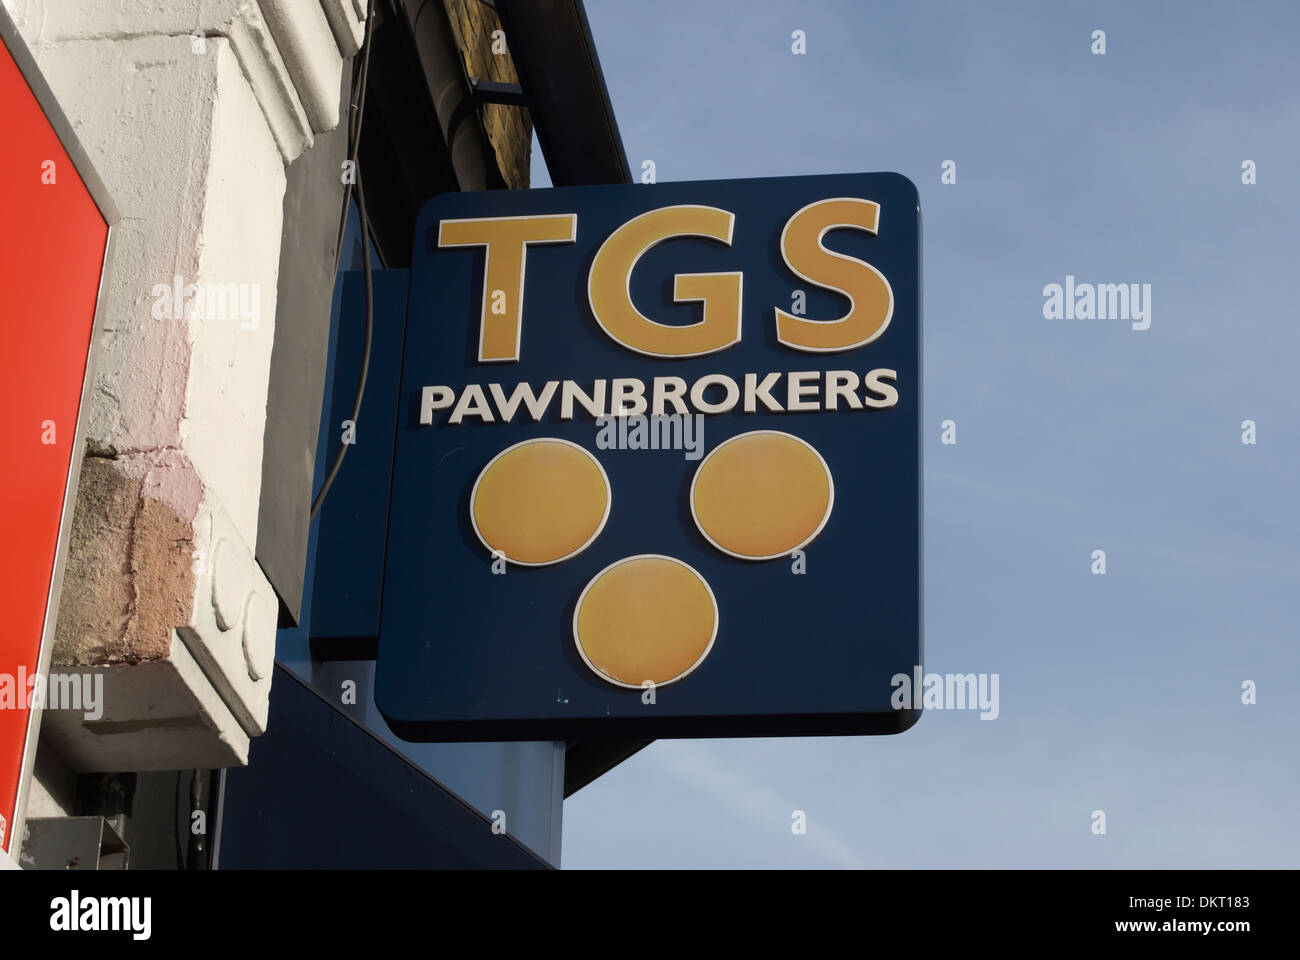 hängende Zeichen der Hautpstraße Pfandleiher Tgs, Hounslow, Middlesex, england Stockfoto